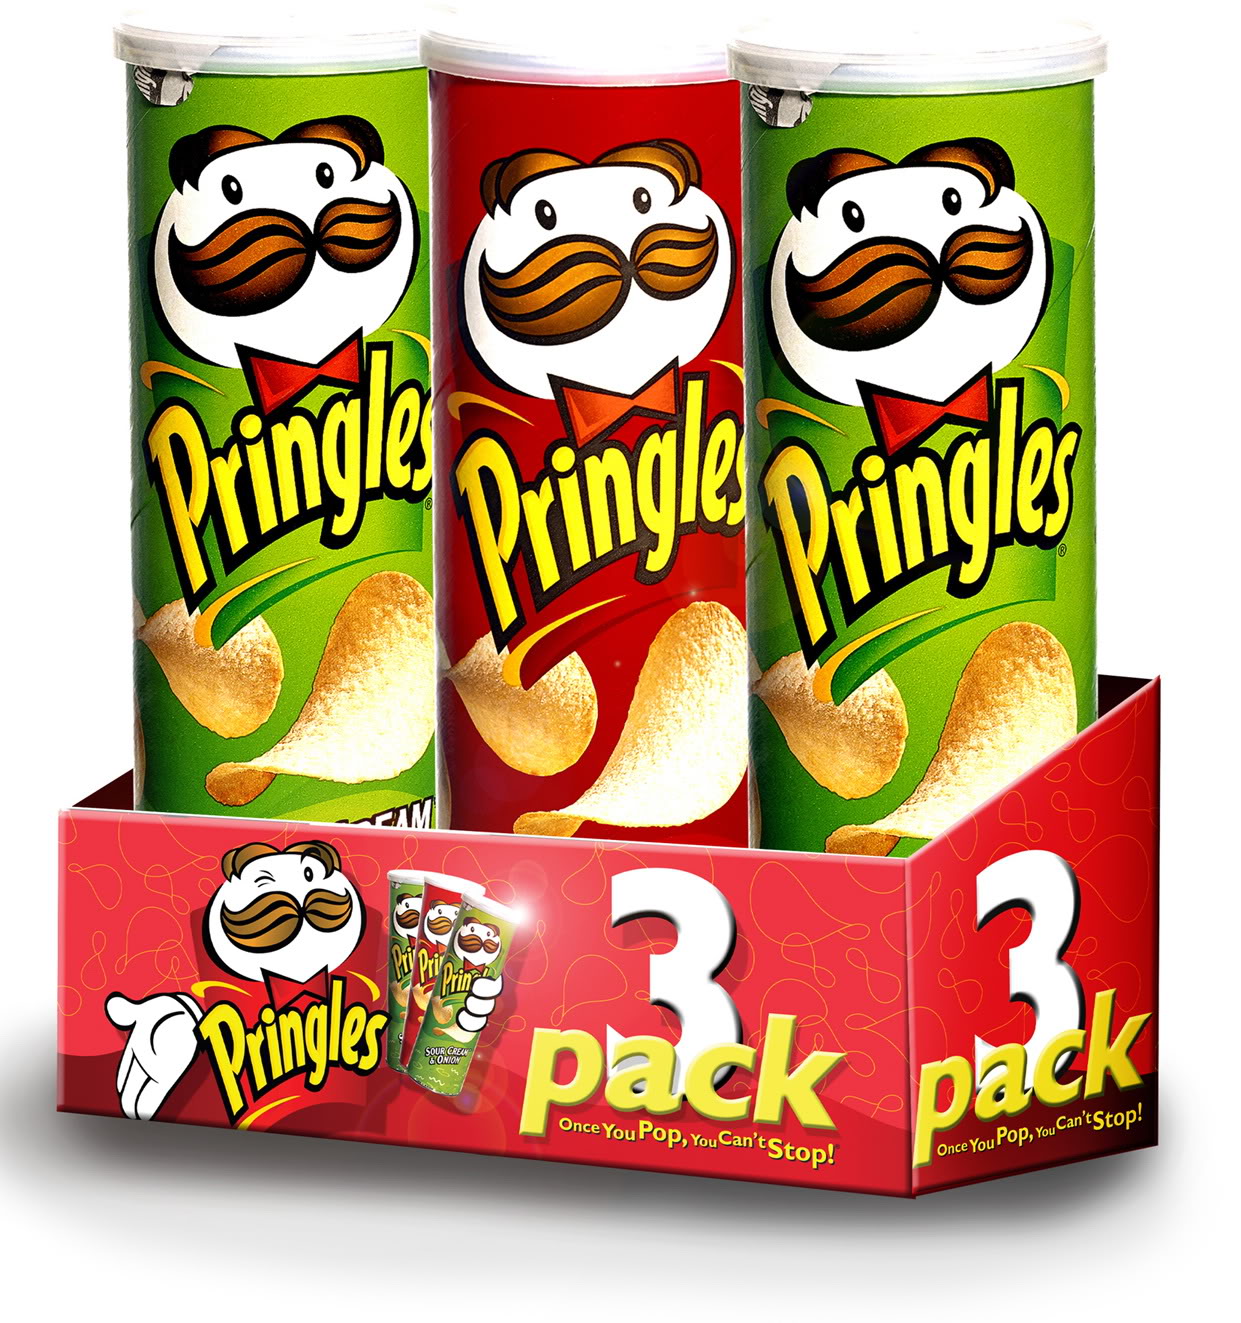 The Pringles - Love story